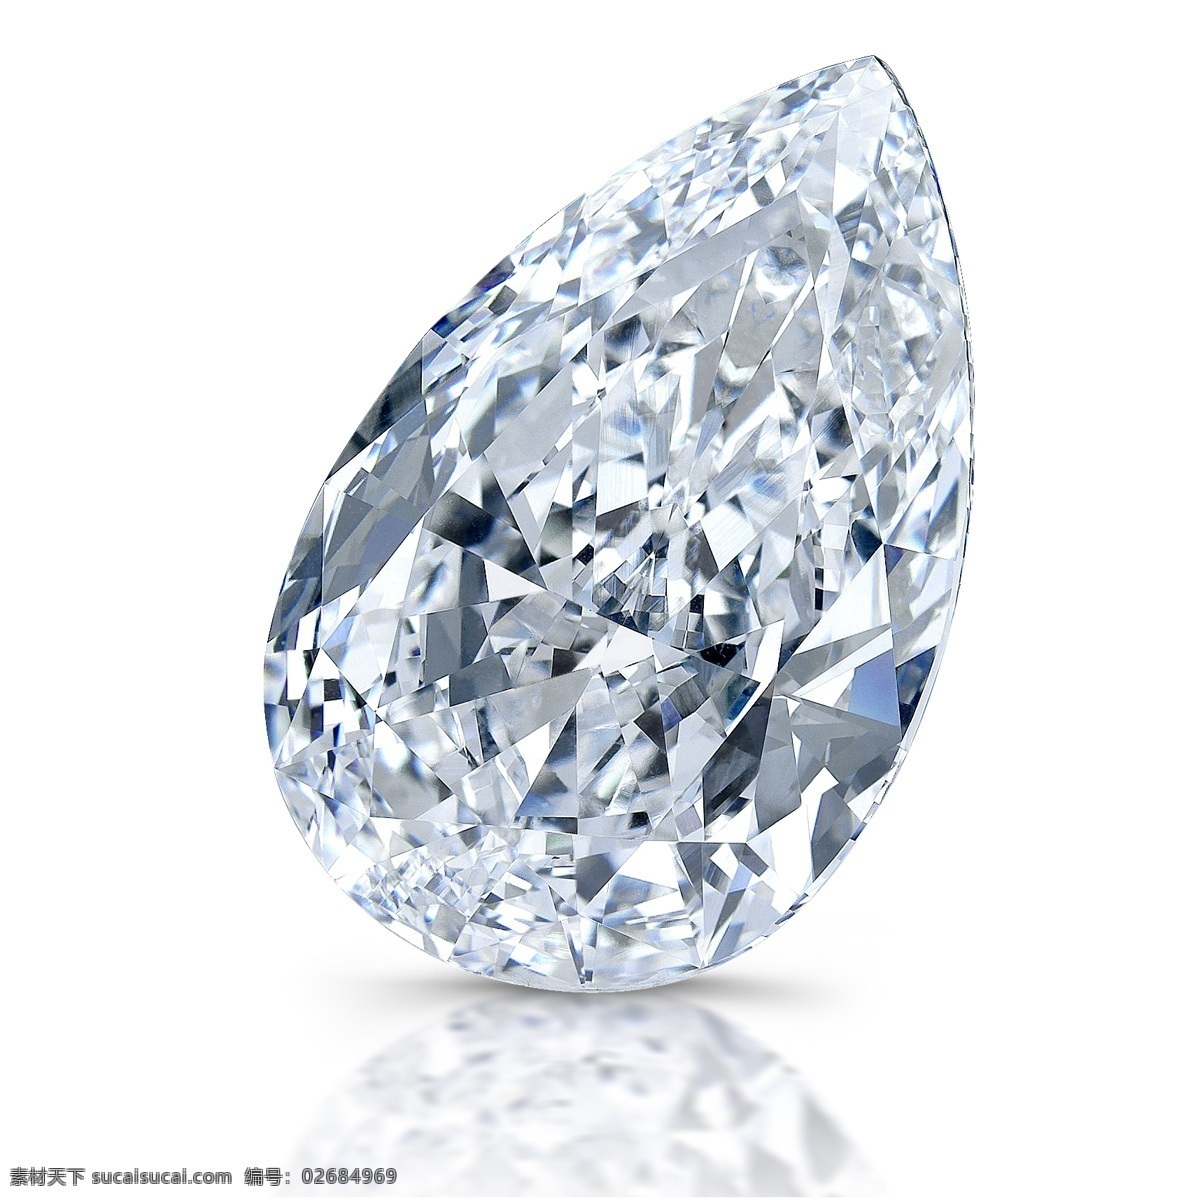 钻石链子 3d设计 蓝宝石 钻石广告 钻石图片模板 发光的钻石 美丽的钻石 宝石钻石 3d模型素材 其他3d模型